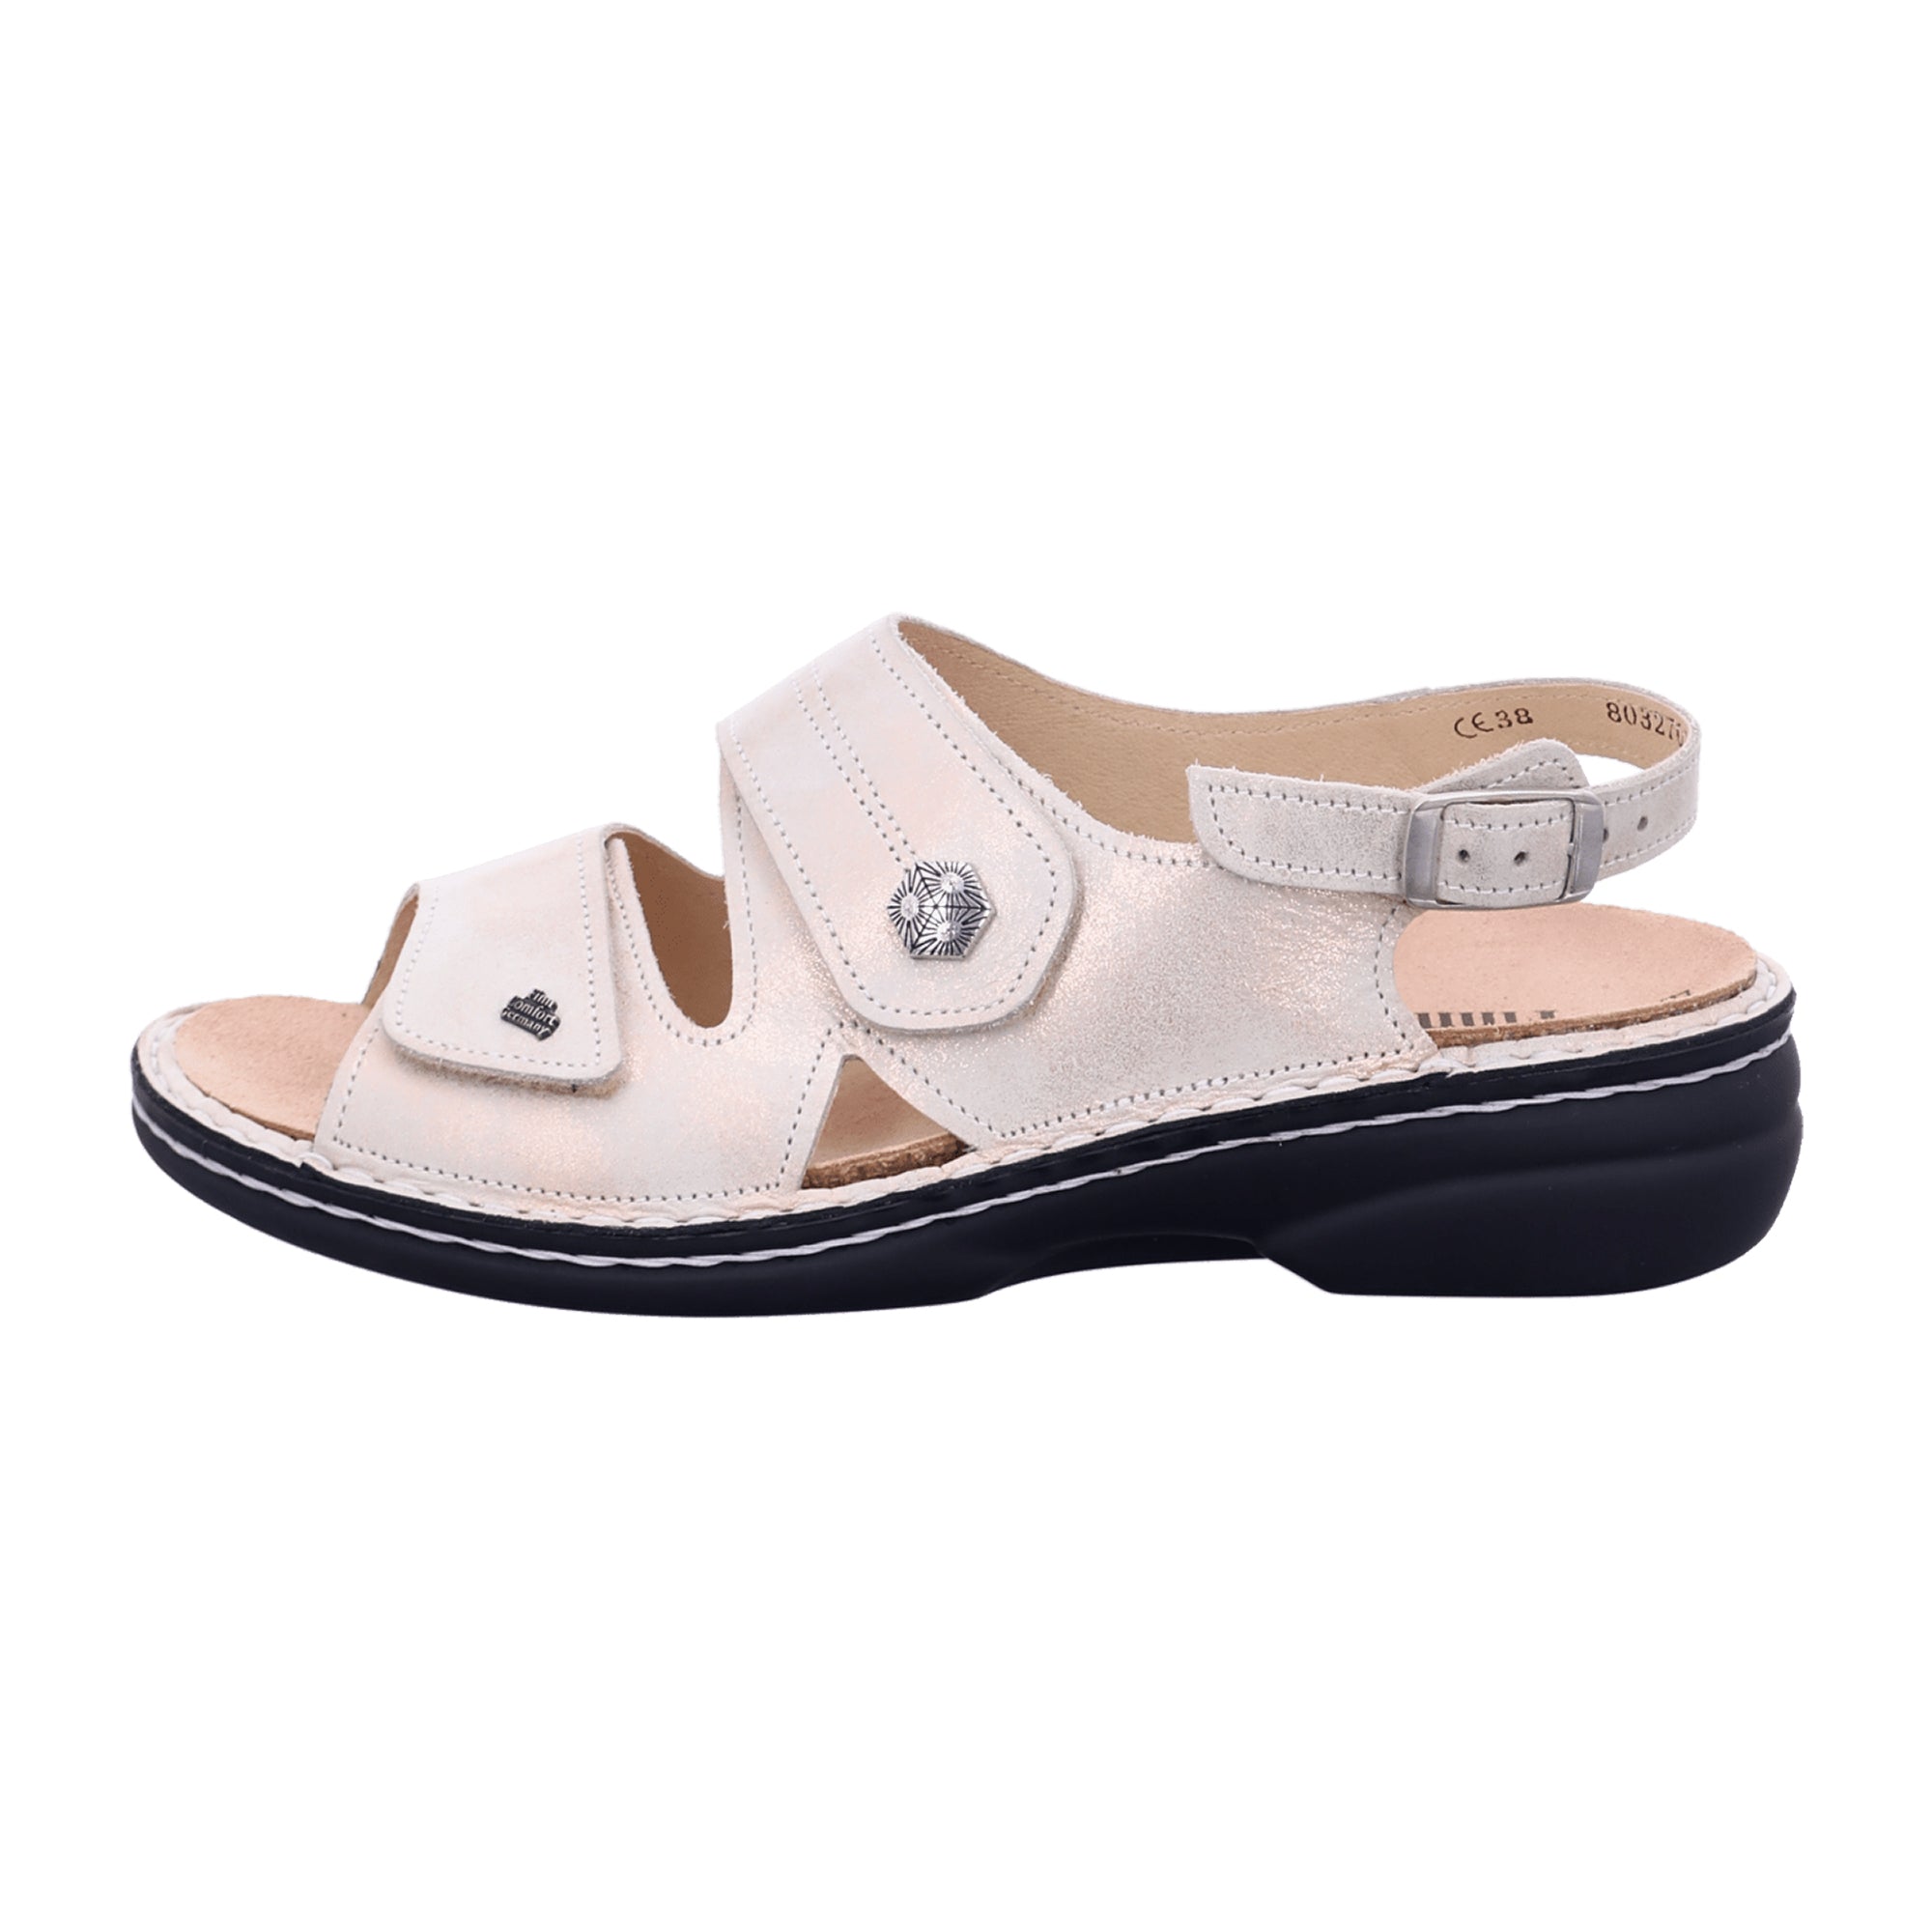 Finn Comfort Milos White Sandals for Women - Stylish & Durable